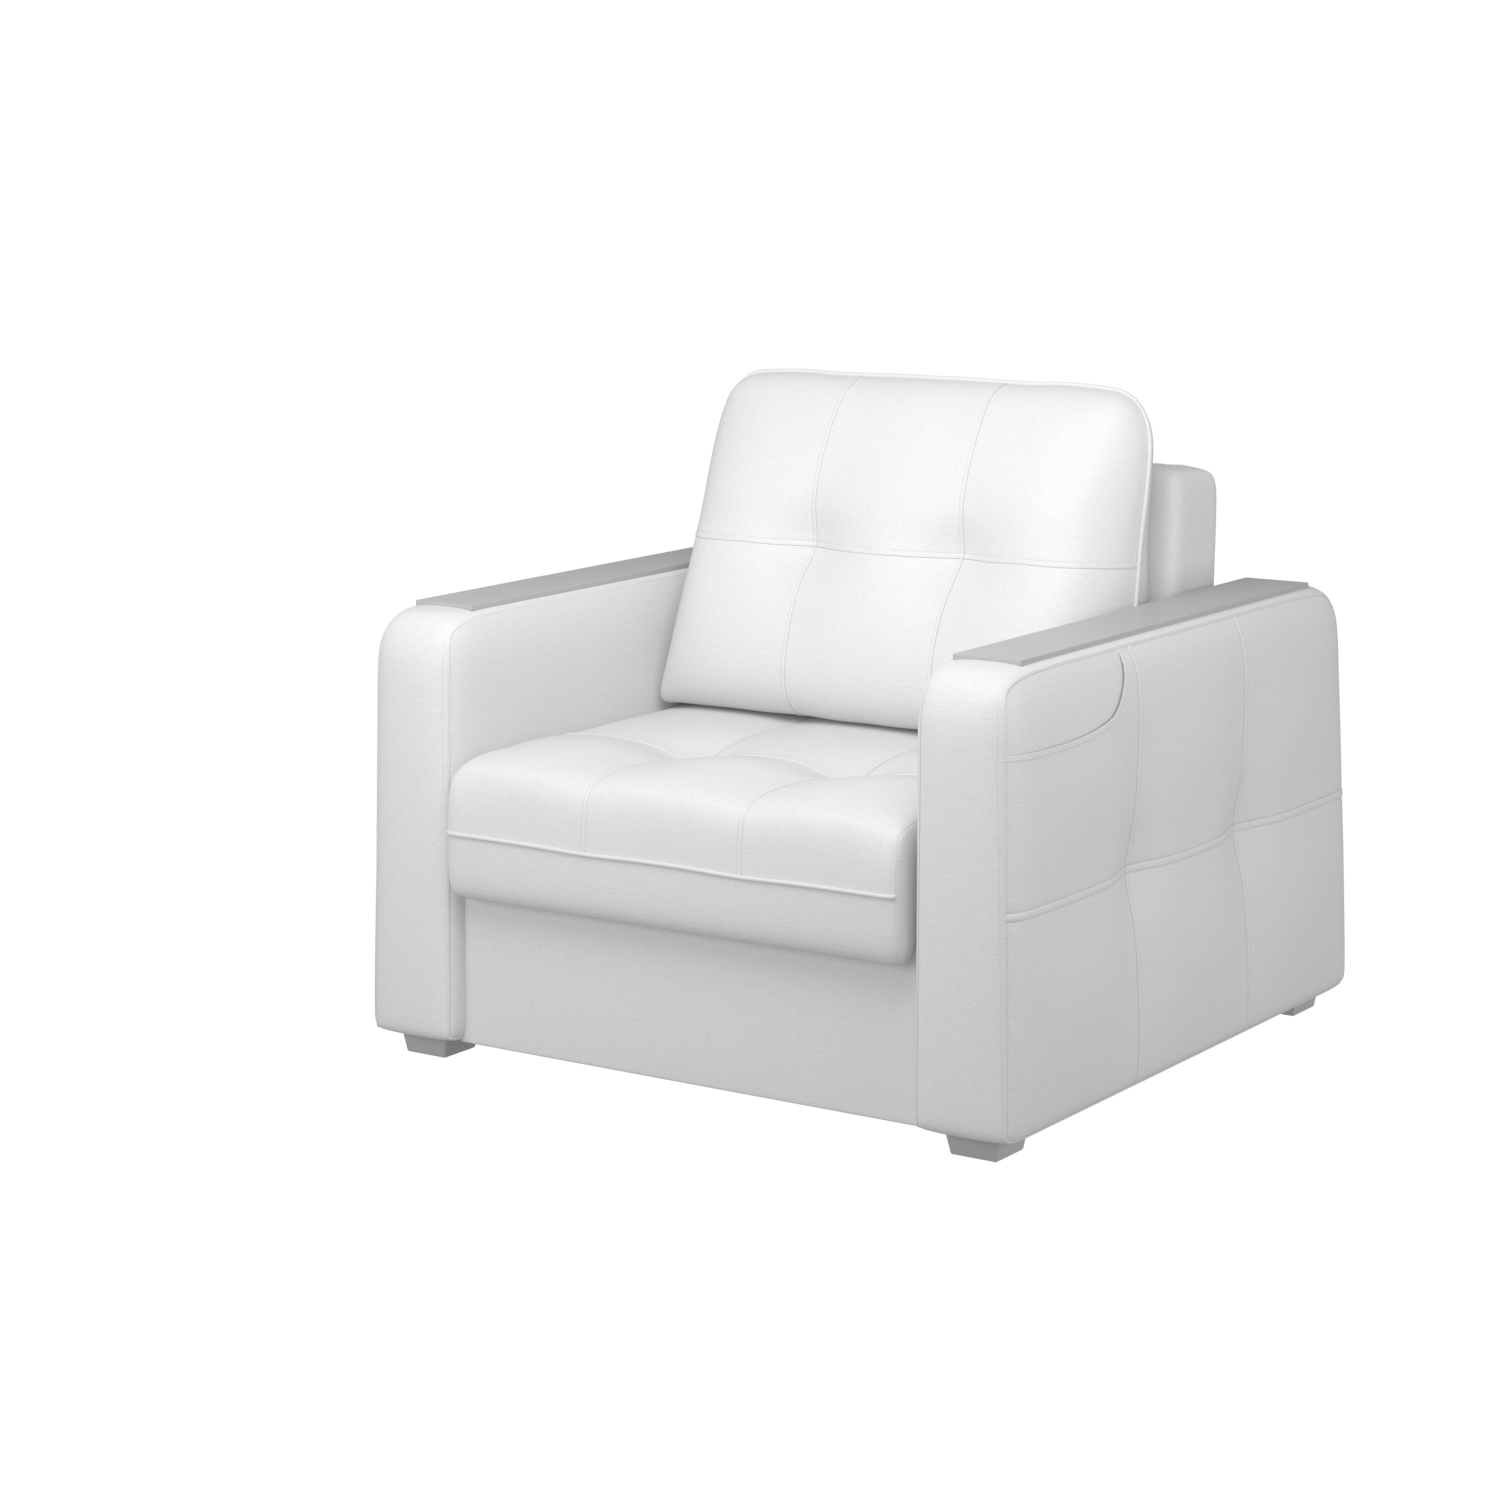 Мягкое кресло с ящиком Киль-3, кКЛ01.вл28.28у